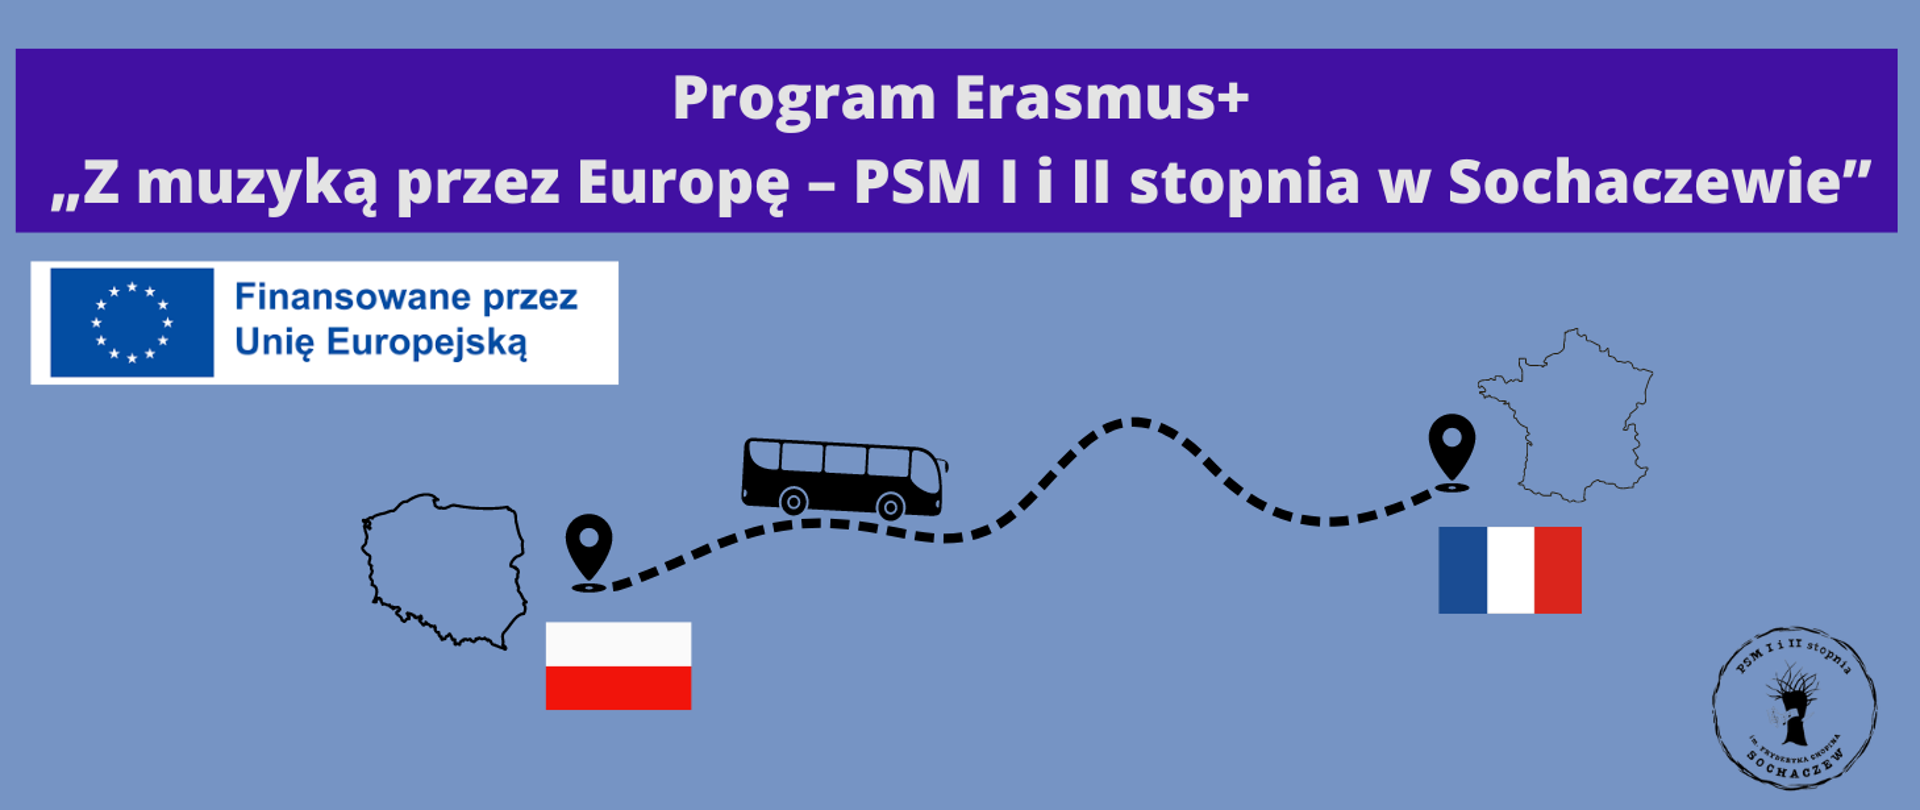 Tło niebieskie, na górze grafiki biały napis: Program Erasmus+ "Z muzyką przez Europę - PSM I i II stopnia w Sochaczewie.. Poniżej z lewej strony logo Unii Europejskiej i napis Finansowane przez Unię Europejską. W prawym dolnym rogu logo szkoły. Pośrodku czarna grafika przedstawiająca zarys mapy Polski, flagę Polski, grafikę autobusu jadącego po przerywanej linii do punktu, gdzie przedstawiony jest zarys mapy Francji i flaga Francji